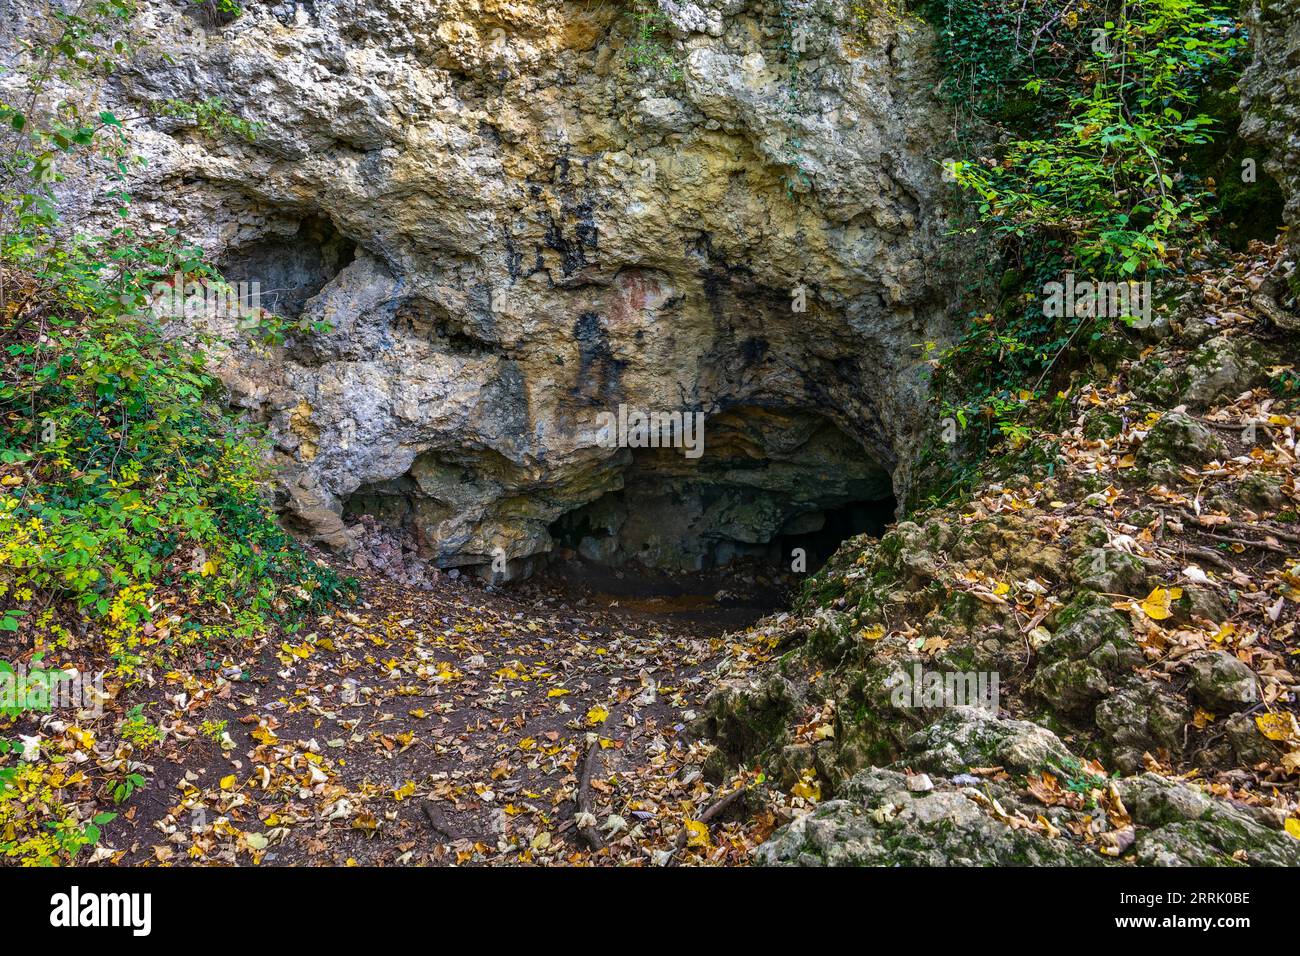 Die Barnberghöhle befindet sich auf dem Nordkamm der Schwäbischen Alb oberhalb der Neuffener Steige auf 695 Metern über dem Meeresspiegel. Die Höhle ist 46 Meter lang. Artefakte aus der neolithischen Zeit wurden darin entdeckt. Es ist als Geotop geschützt und als Naturdenkmal registriert. Geschützter Bereich Nr. 81160462903 gehört die Barnberghöhle zum UNESCO-Geopark Schwäbische Alb, Neuffen. Stockfoto